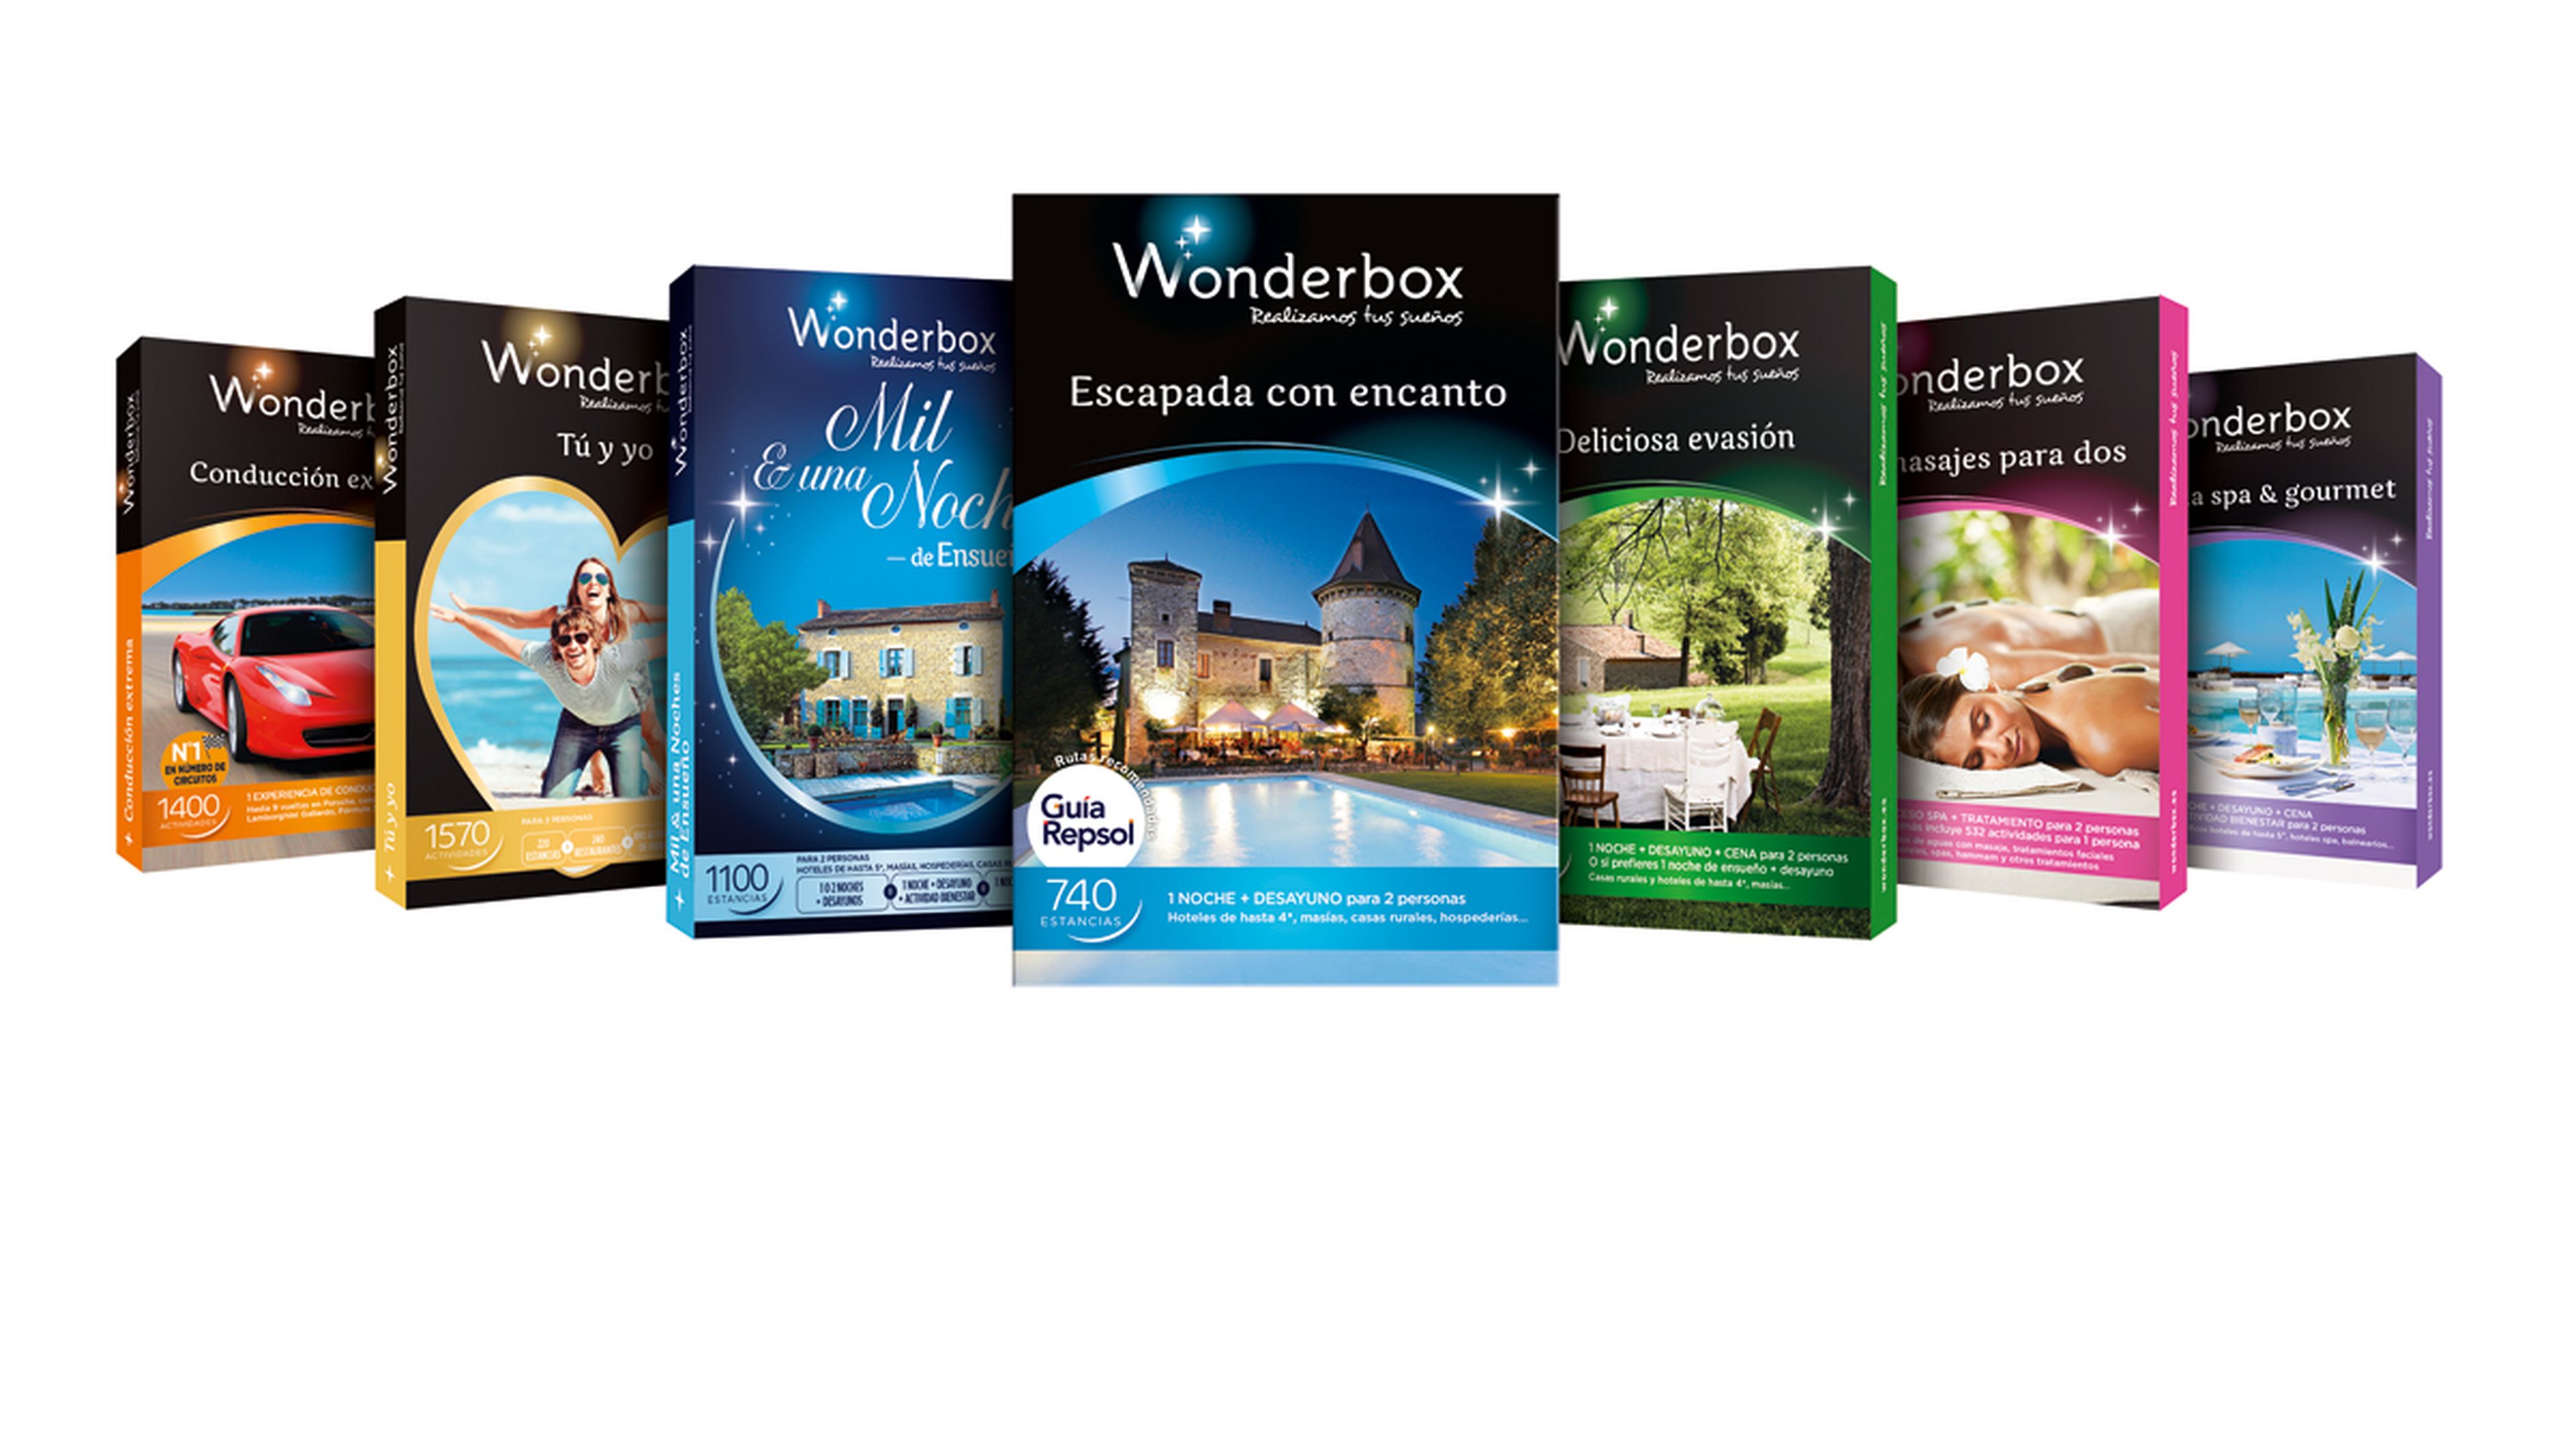 Nuevos cofres Wonderbox 2015: aventura, relax y coches